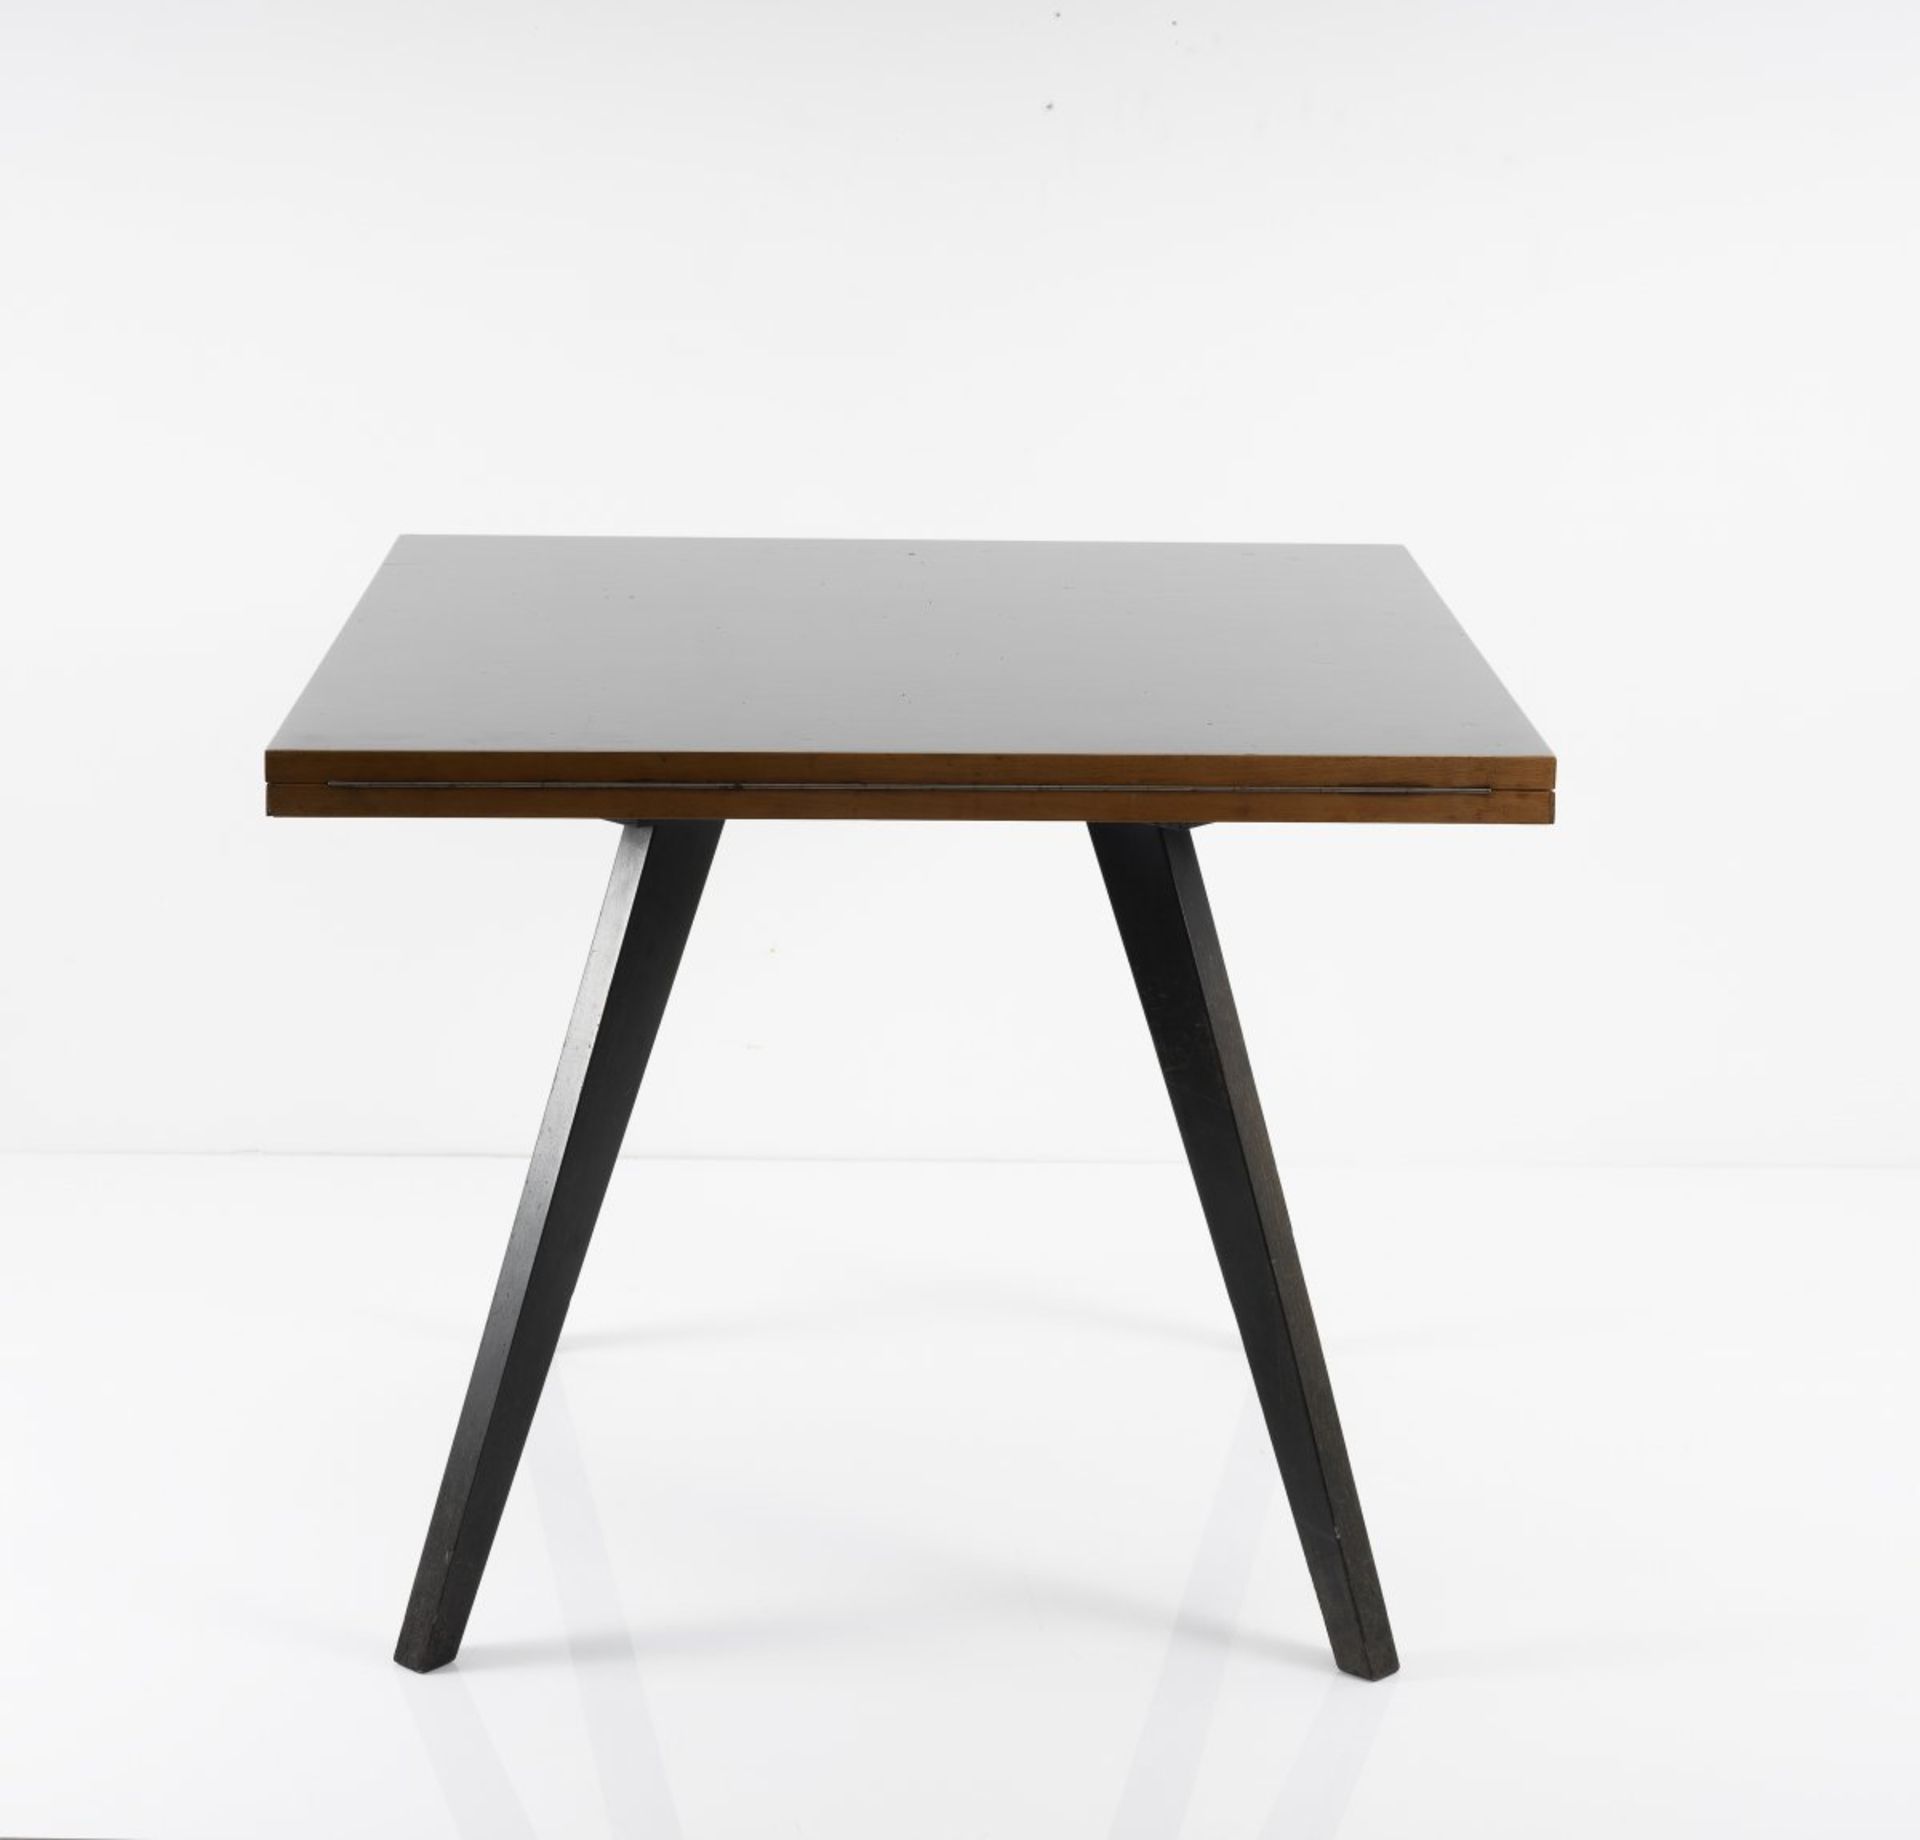 Max Bill, Tisch 'quadratrund', 1949Tisch 'quadratrund', 1949H. 73 x 90 x 90 cm bzw. Ø 127,5 cm.